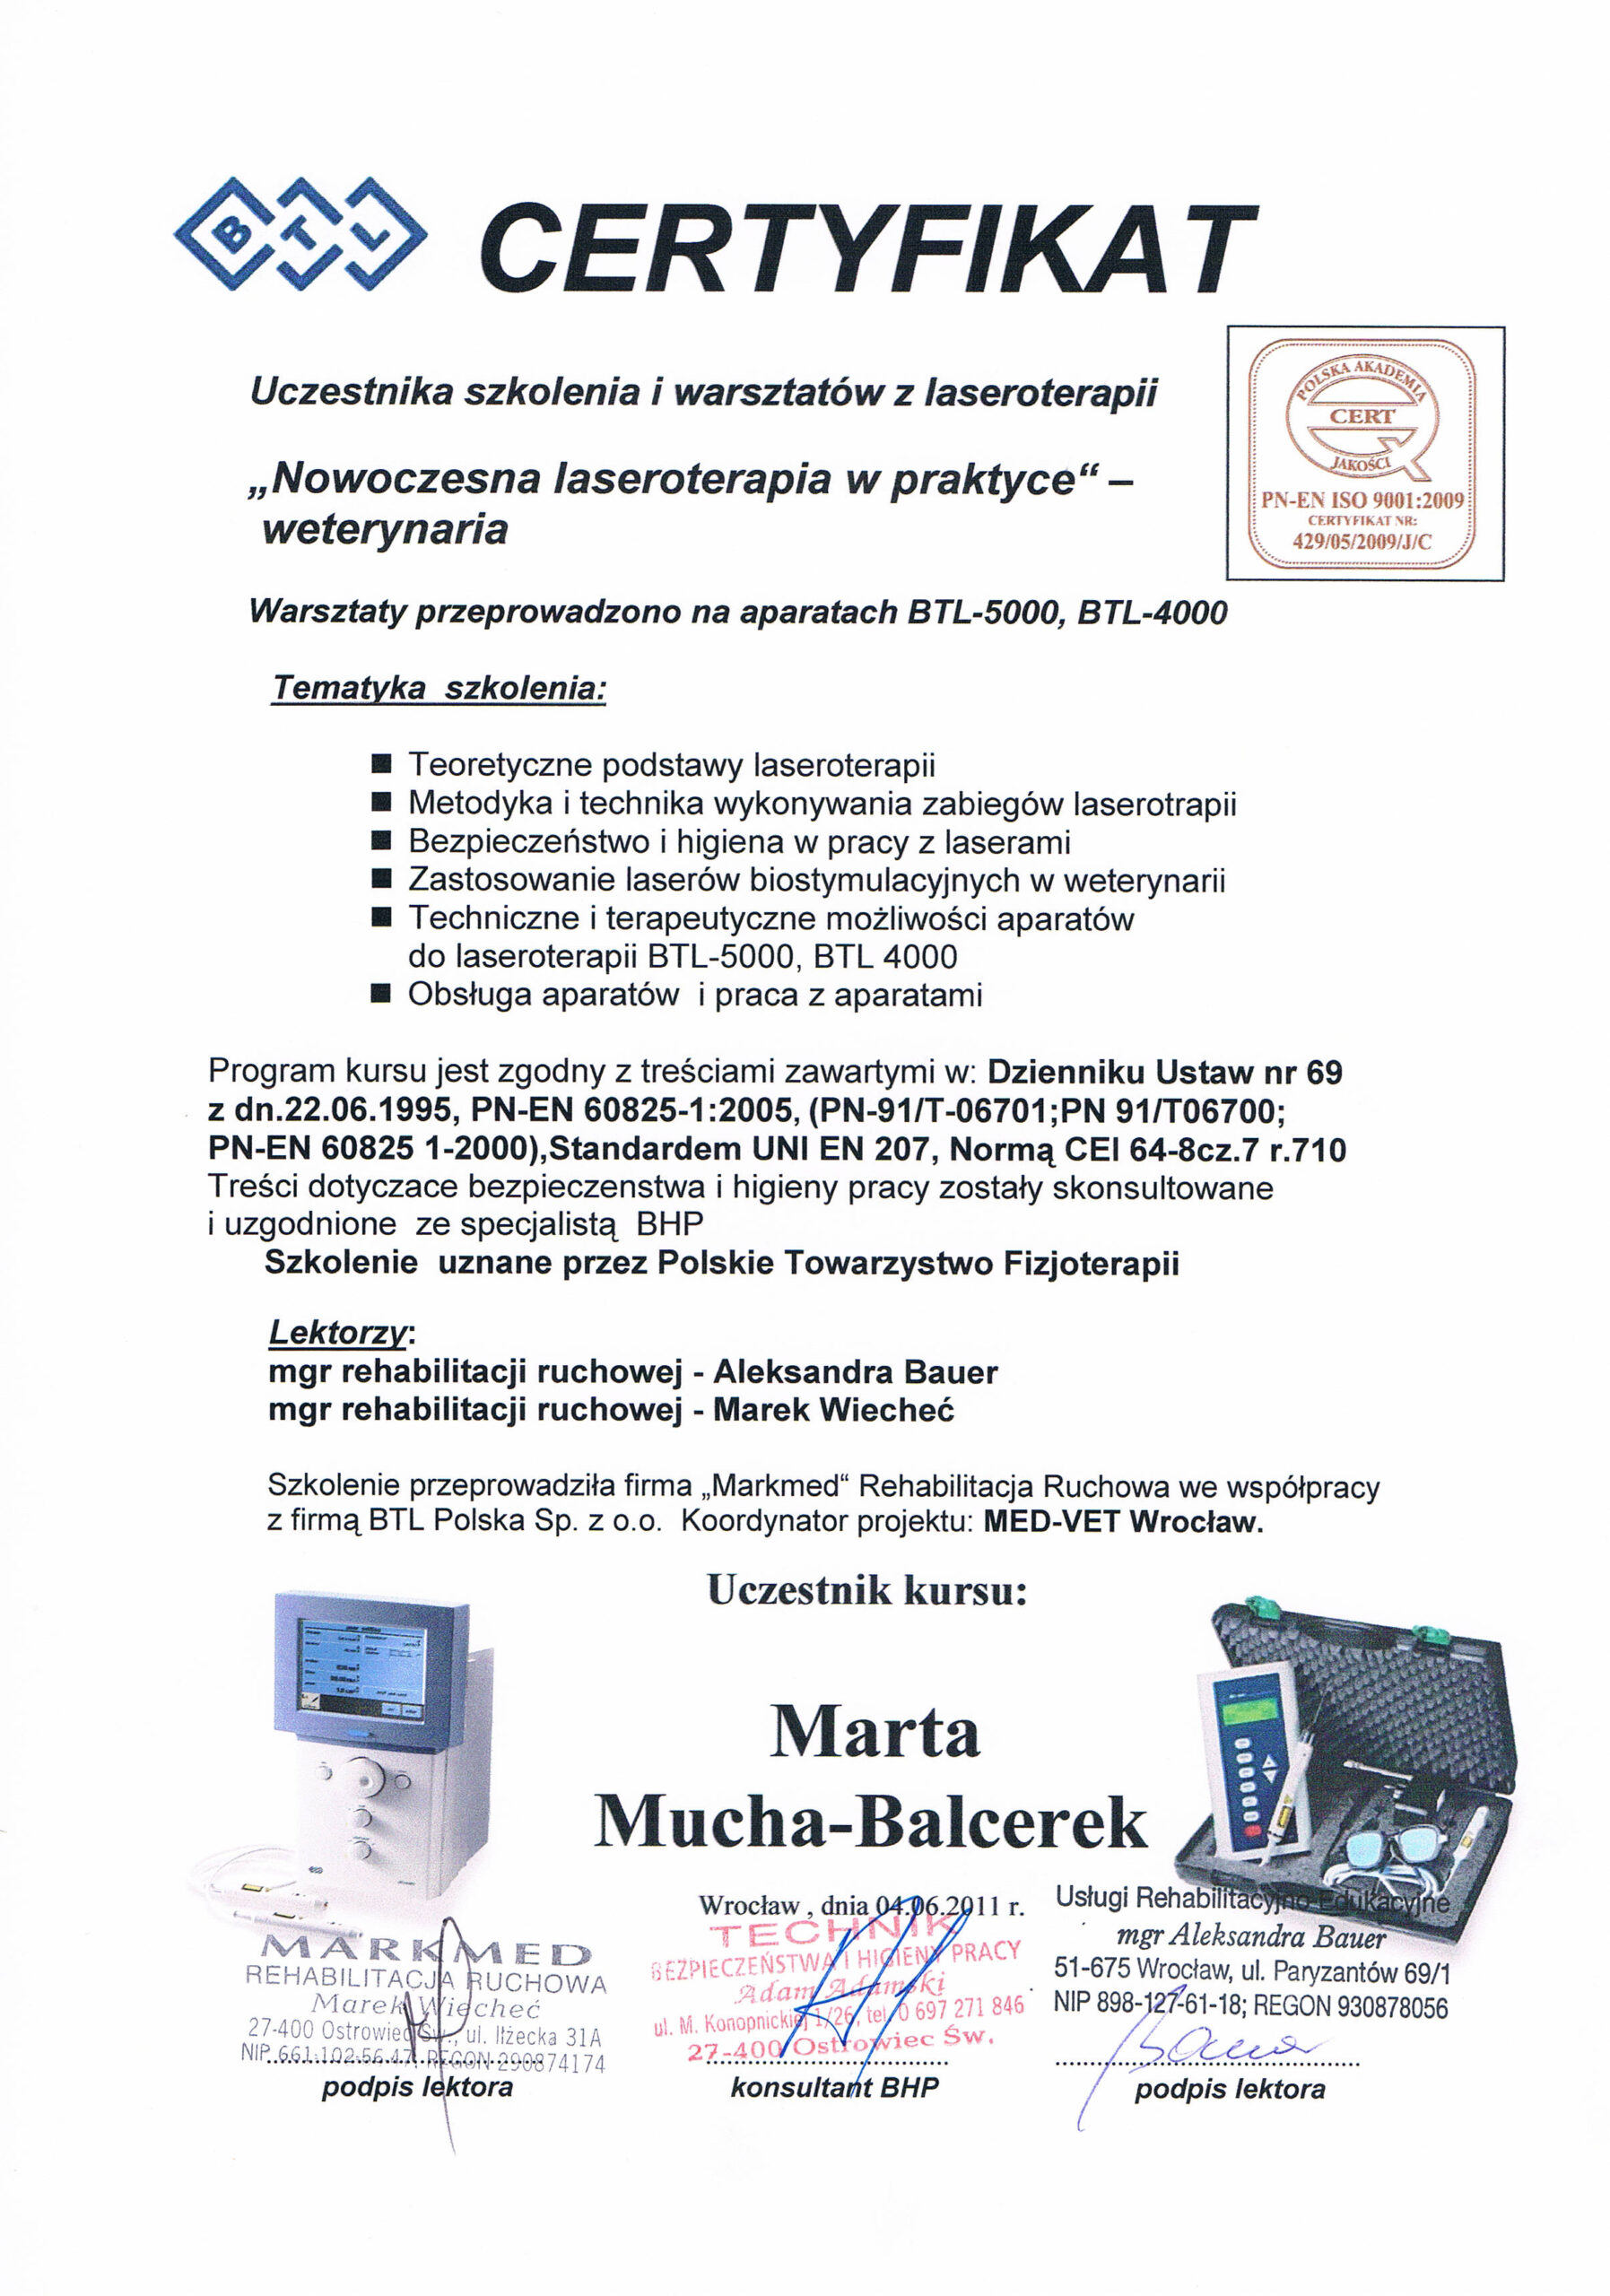 btl certyfikat Mucha-Balcerek